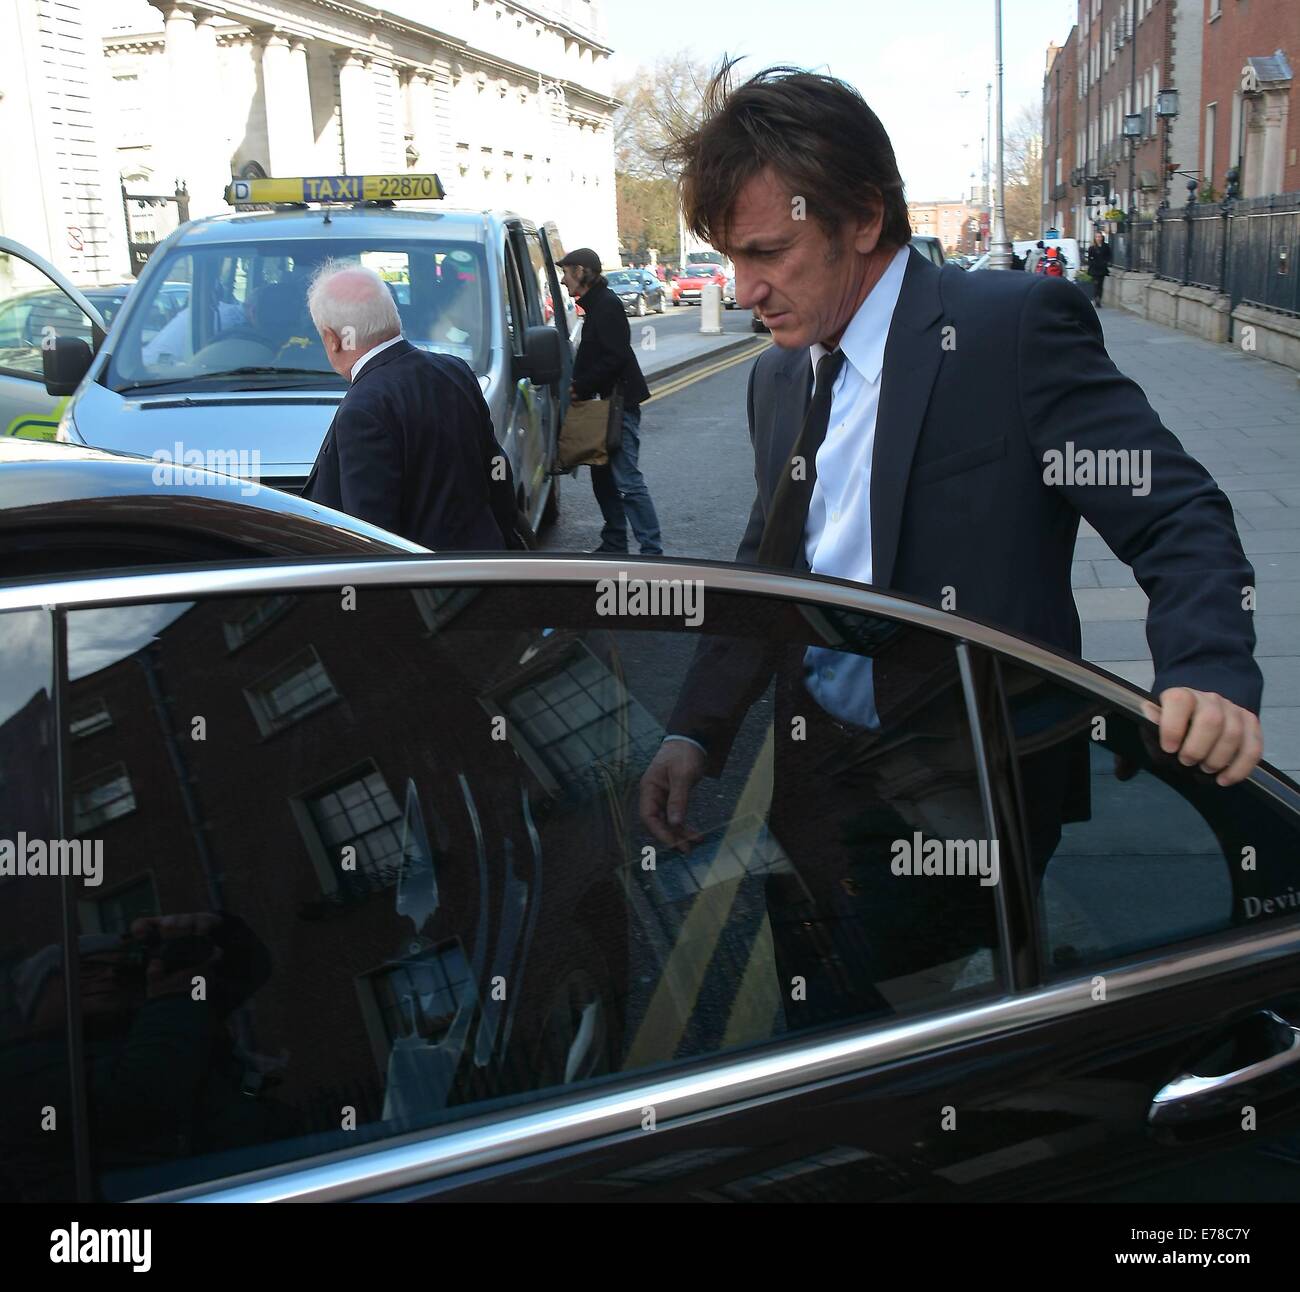 El actor Sean Penn visto abandonar el Merrion Hotel con el director Jim Sheridan... Featuring: Jim Sheridan,Sean Penn donde: Dublín, Irlanda cuando: 07 Mar 2014 Foto de stock